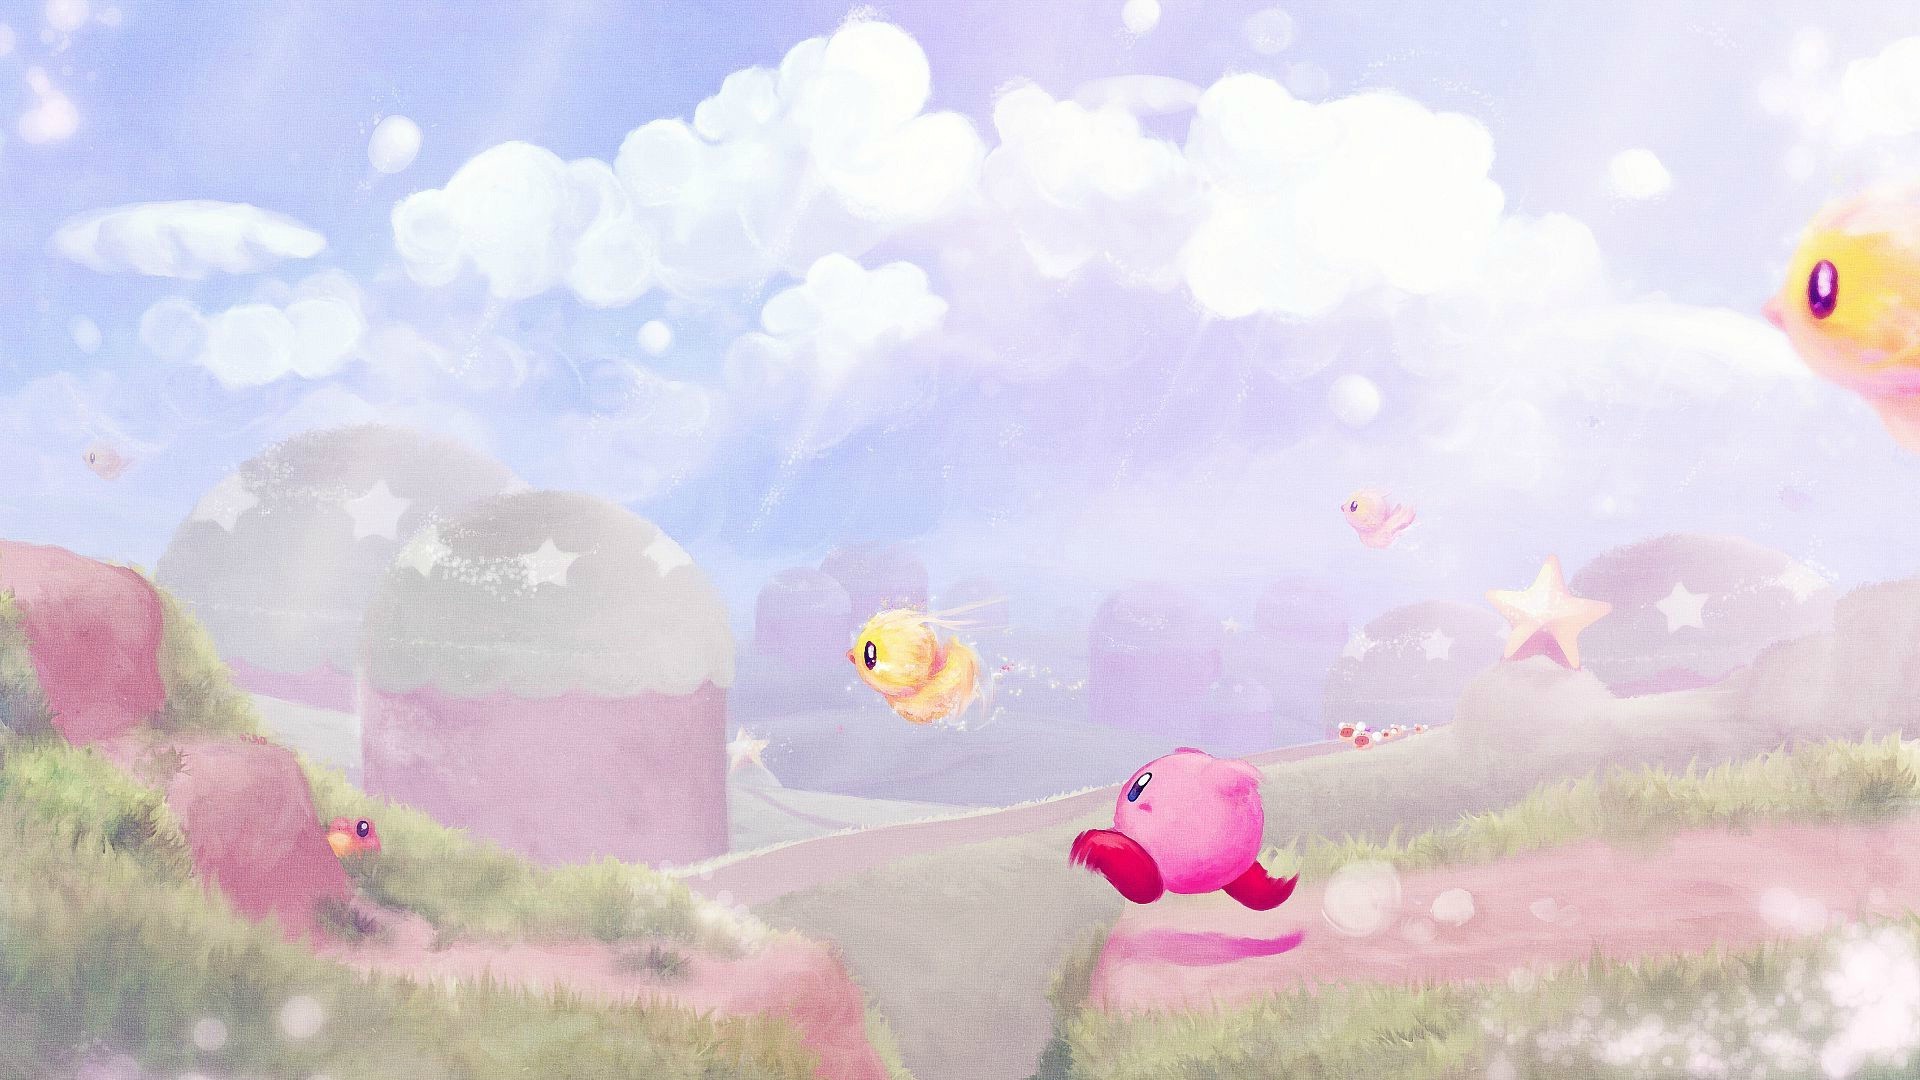 Hãy trang trí màn hình của bạn với hình nền Kirby độ phân giải cao để mang đến cho bạn trải nghiệm thú vị với nhân vật siêu đáng yêu này. Hình nền này sẽ đưa bạn vào thế giới tươi sáng và vui nhộn của Kirby với đầy màu sắc bắt mắt.